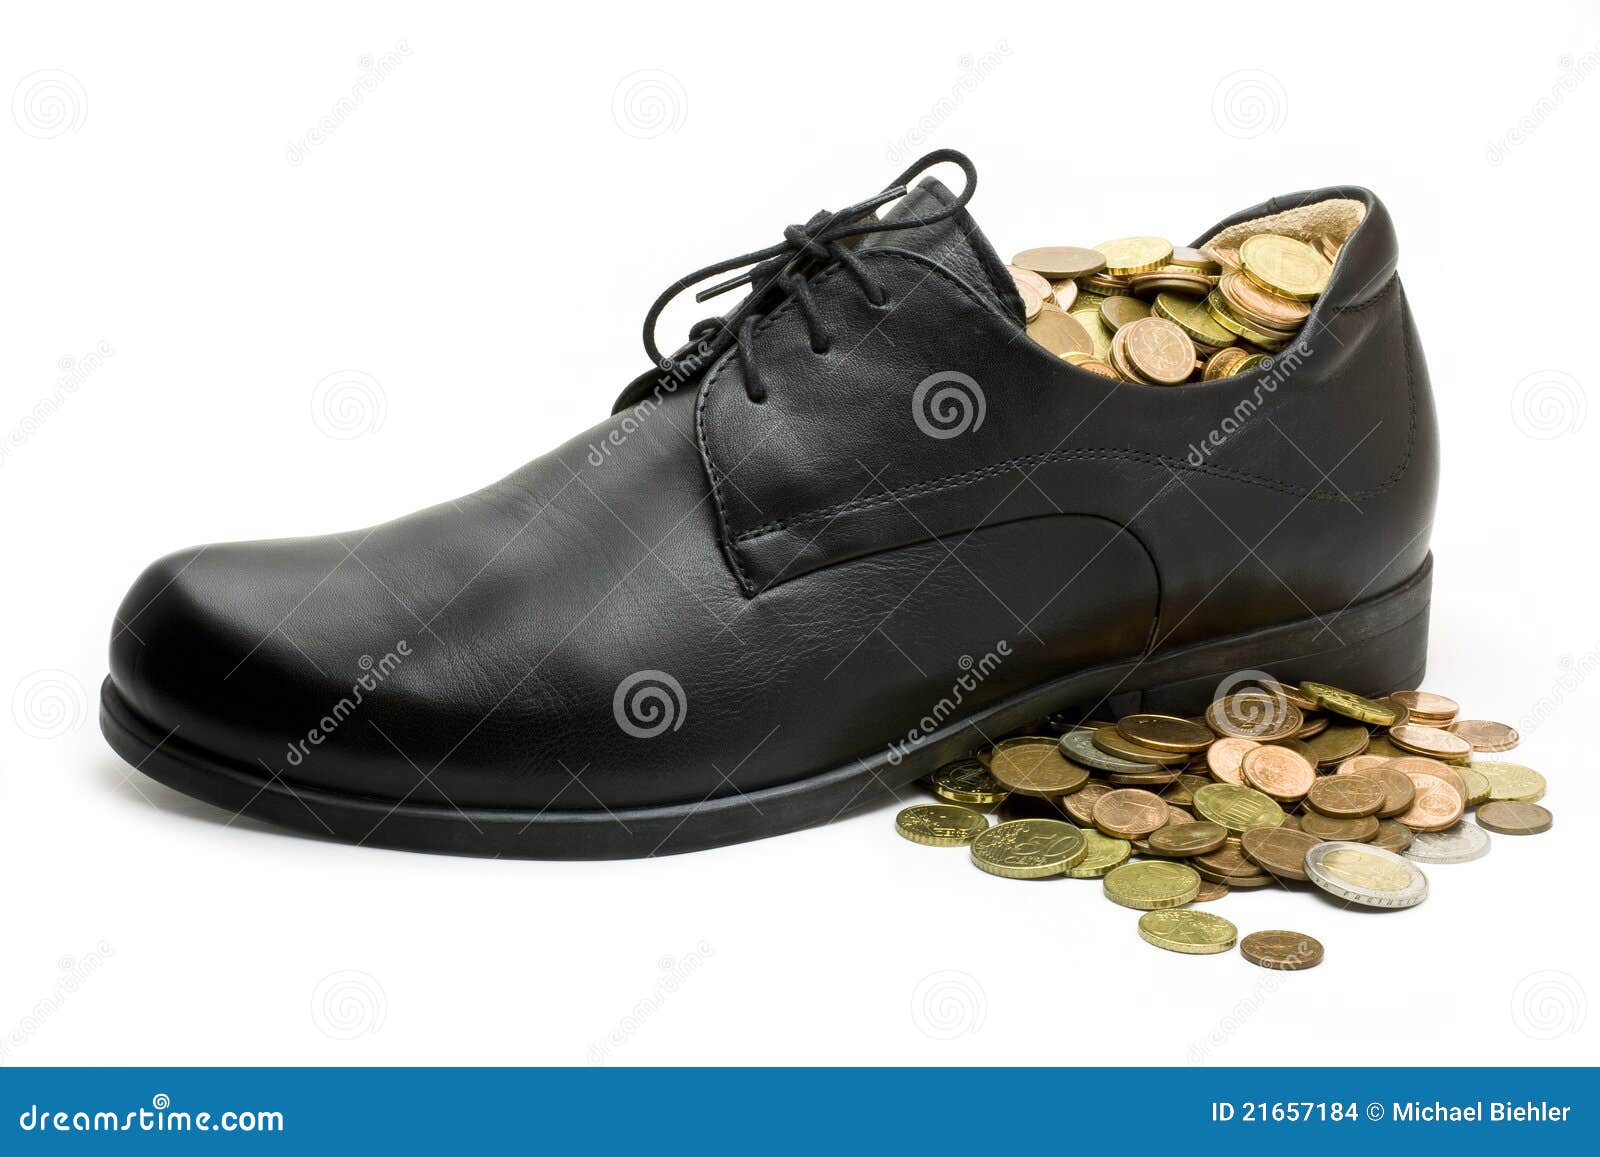 5 рублей в ботинке. Монетки на обуви. Монета в туфле. Монетка в ботинке. Туфли и деньги.